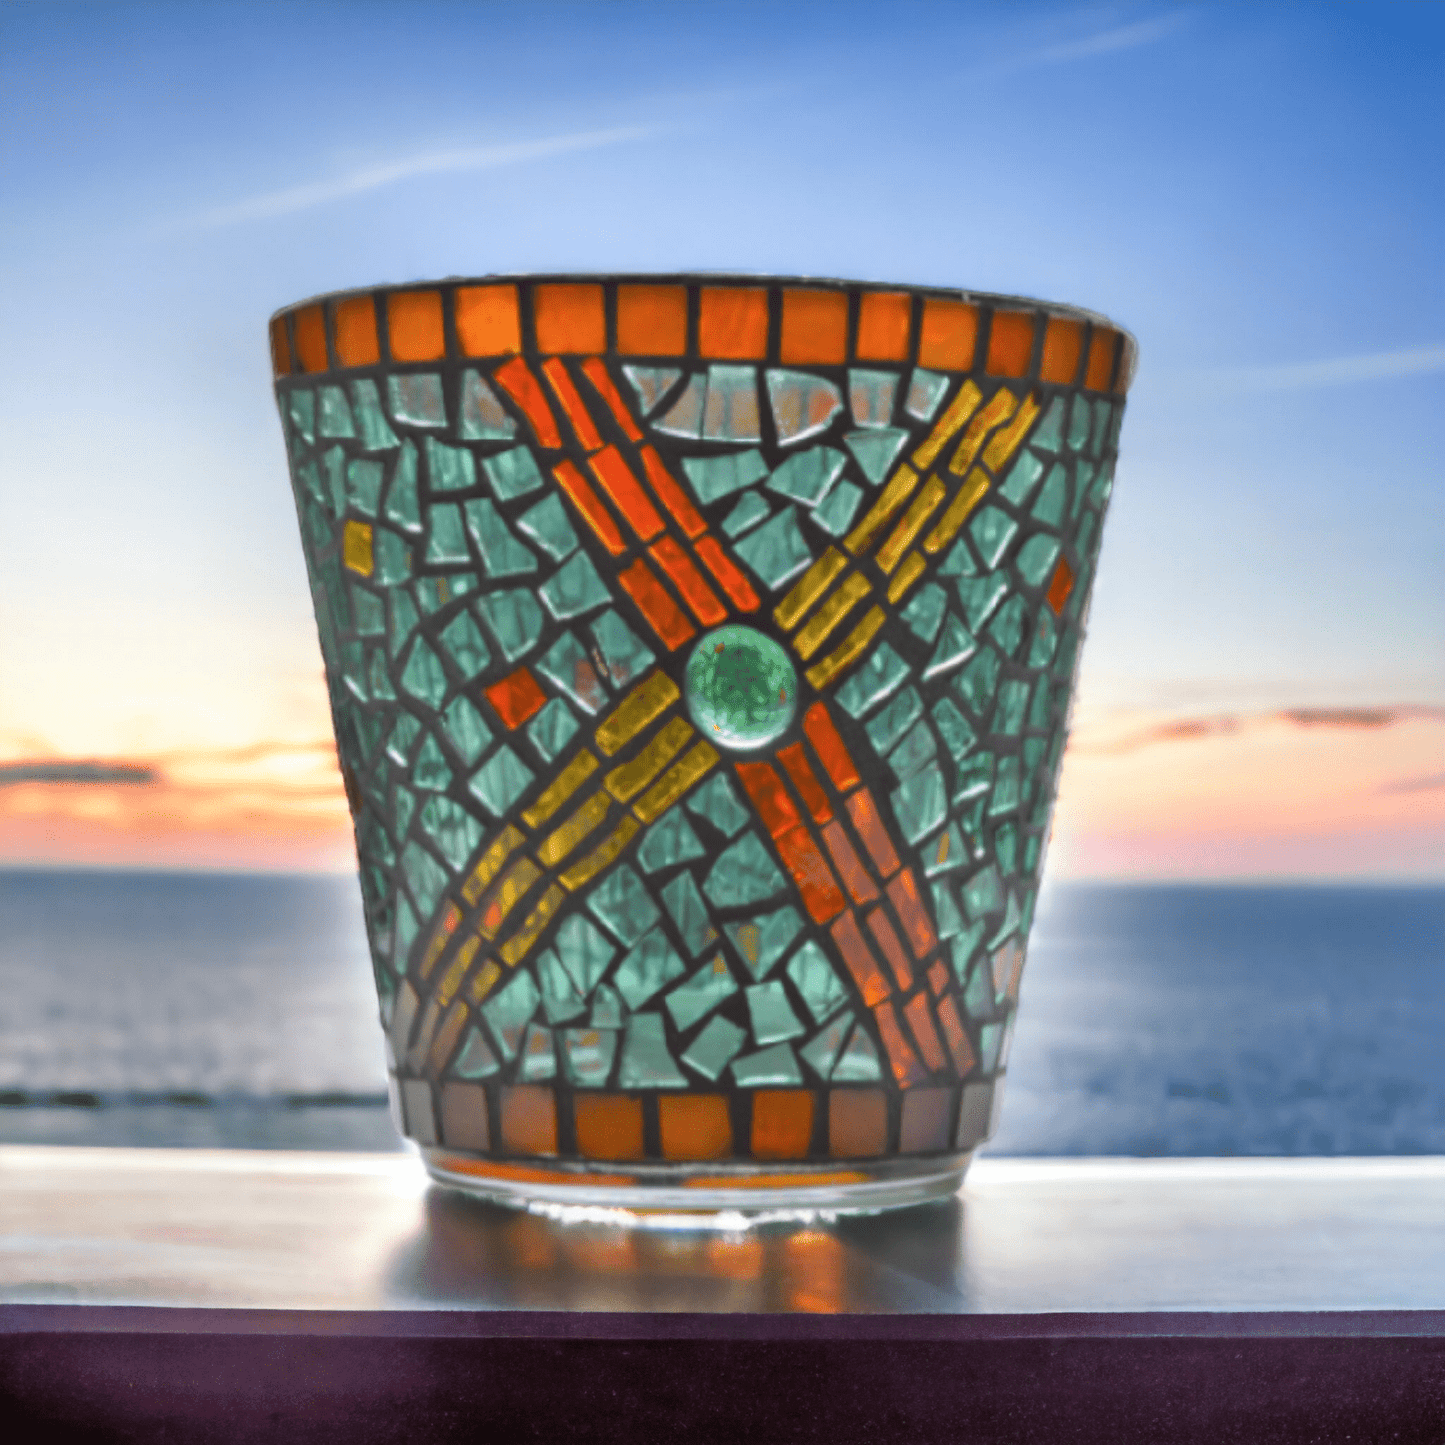 Mosaik Windlicht türkis gelb orange 14 cm hoch - handgemacht - Mosaikkasten aus alt mach neu dekoidee